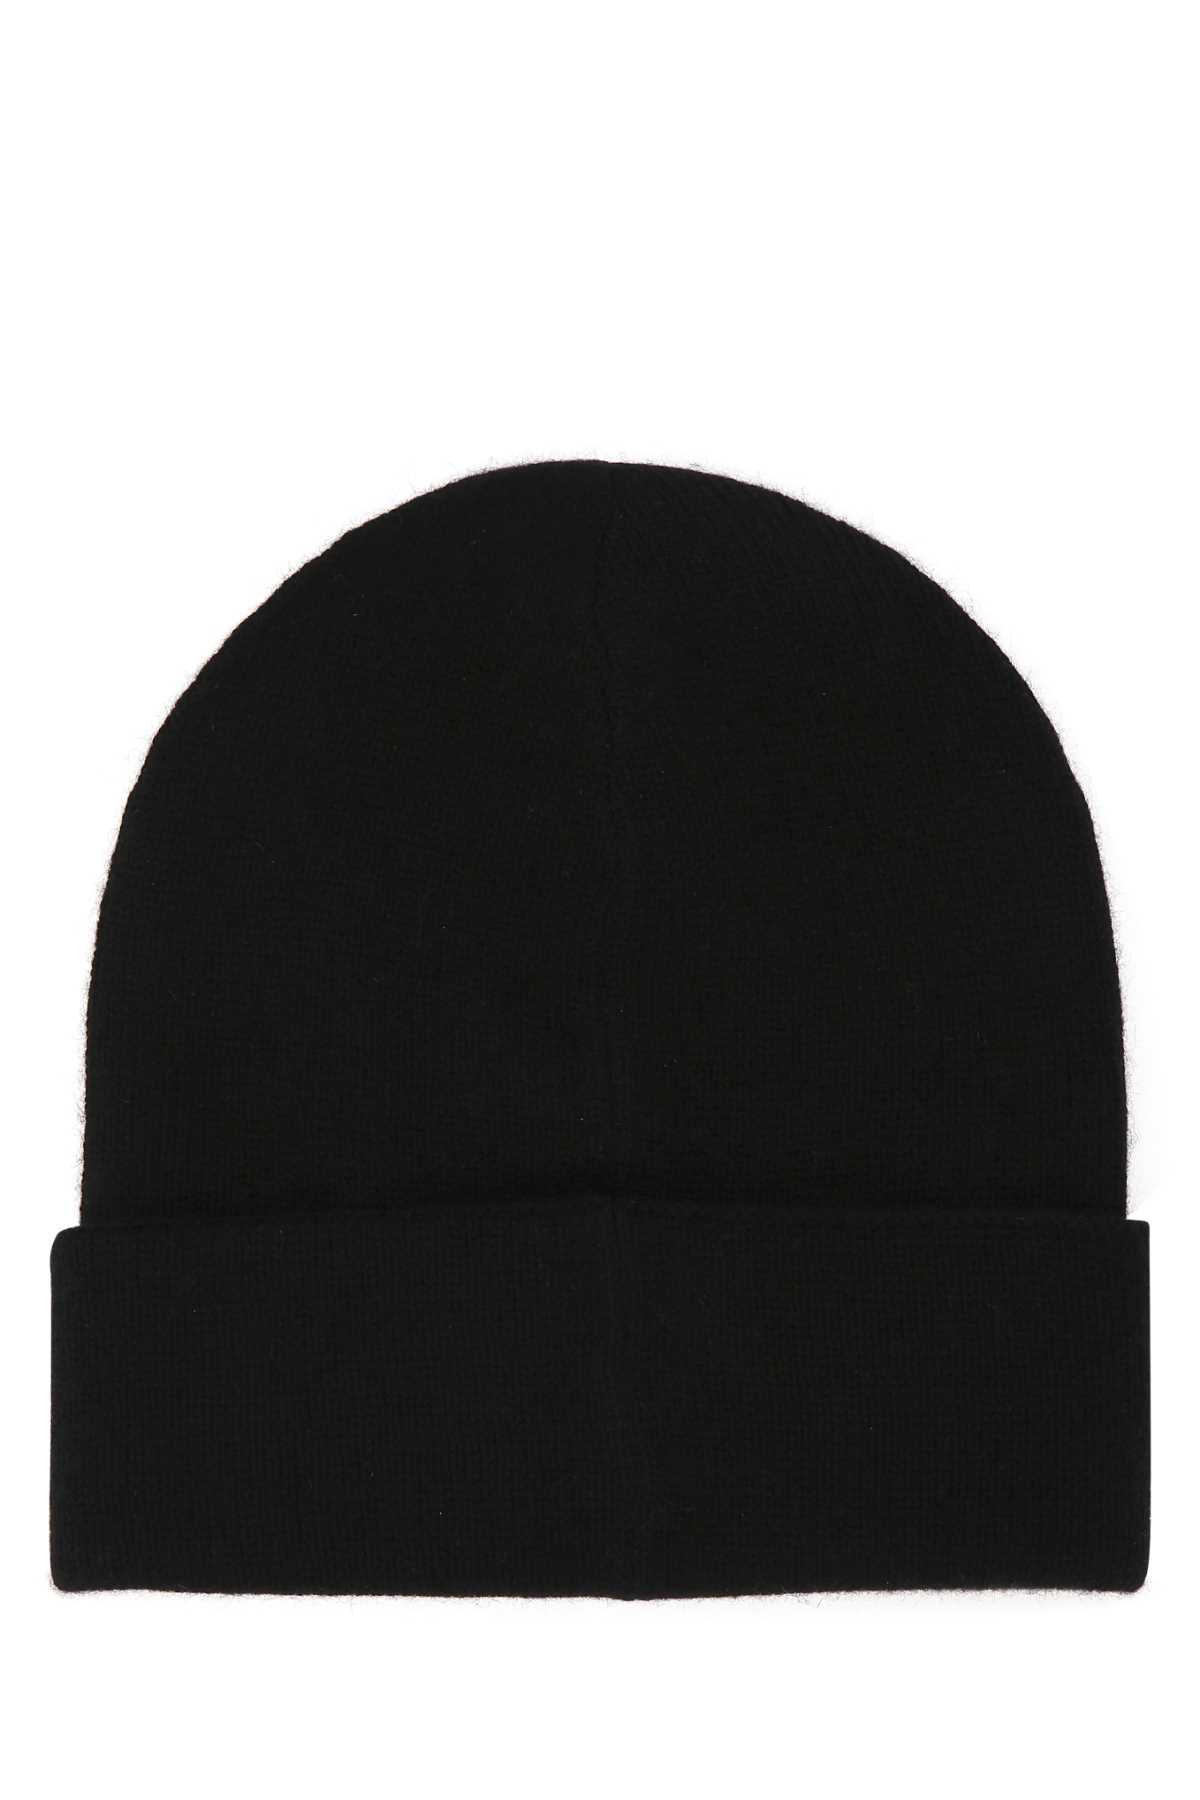 Alexander Mcqueen Black Cashmere Beanie Hat In 1078